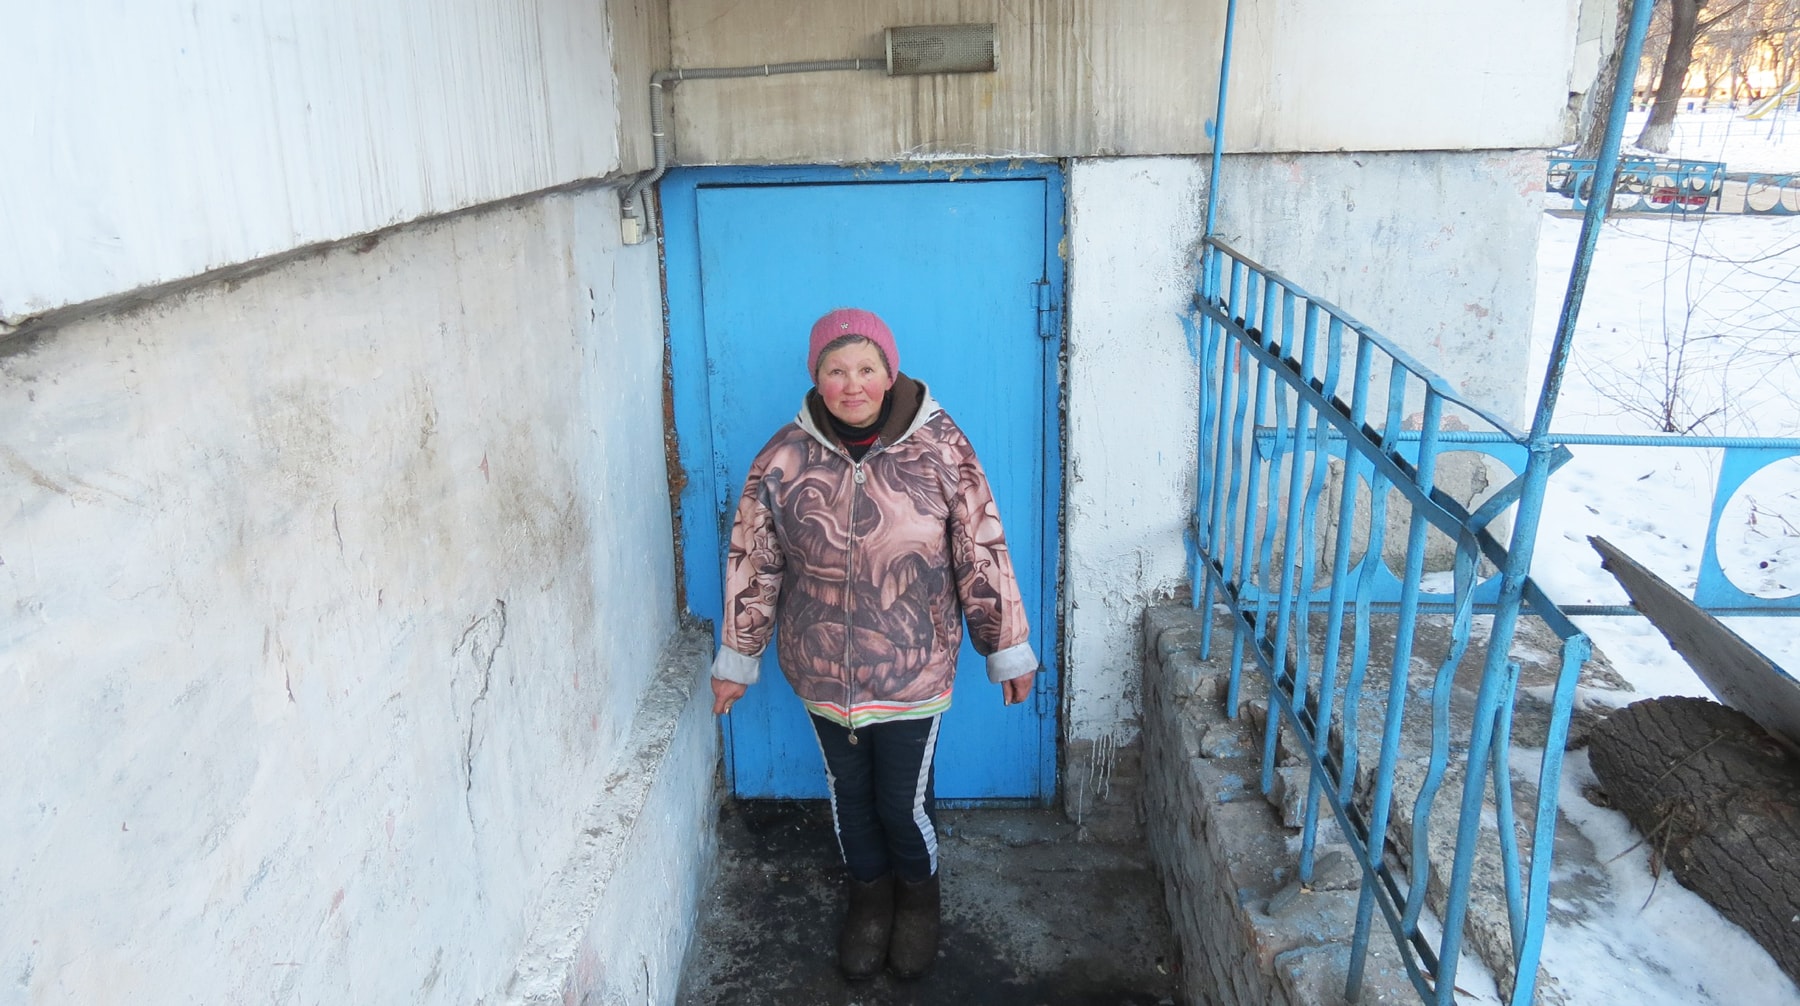 Обманутая черным риелтором женщина, живущая семь лет в мусоропроводе, была уволена после обращения к Путину Фото: © Daily Storm/Дмитрий Никитин